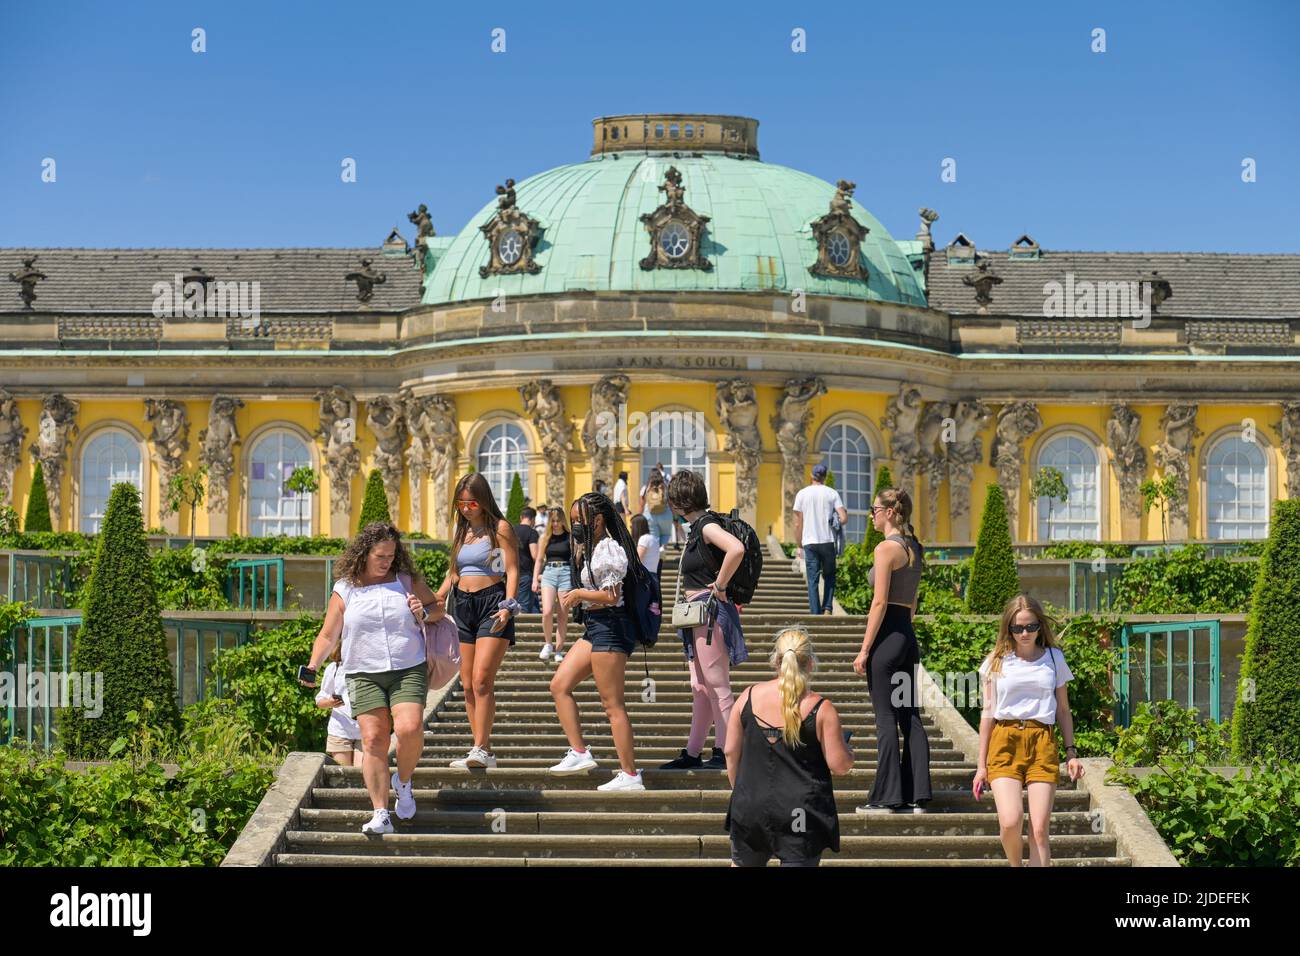 Touristen, Große Freitreppe, Schloß Sanssouci, Potsdam, Brandenburg, Deutschland / No model release Stock Photo